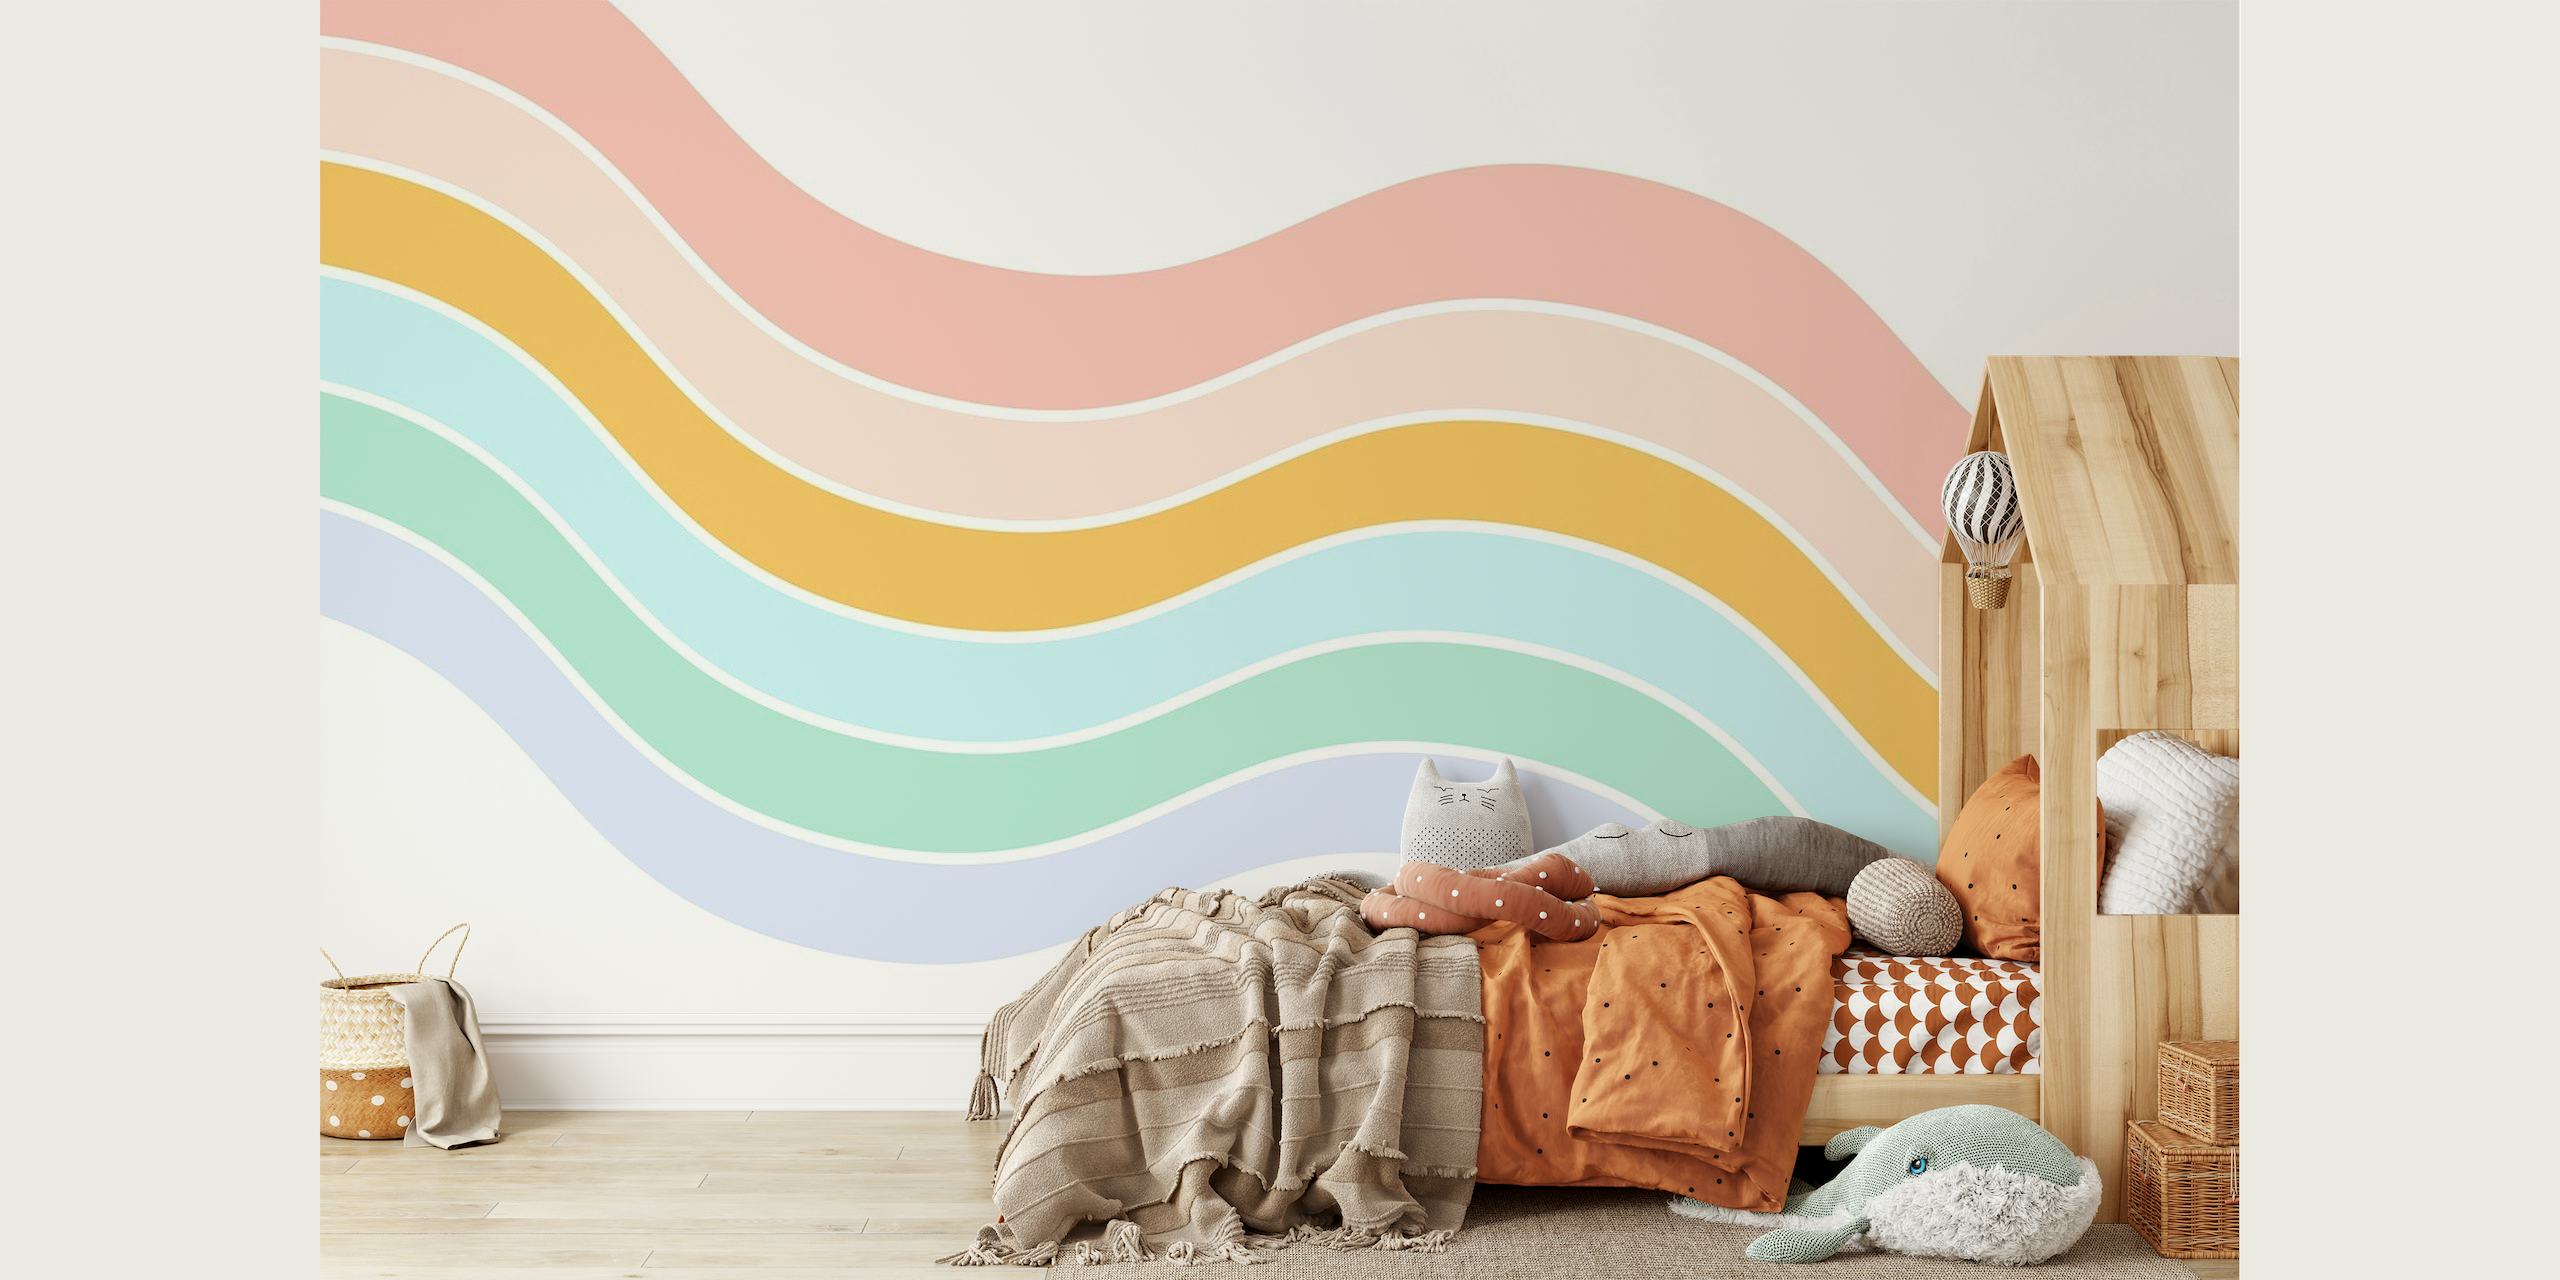 Zidna slika s valovima apstraktne pastelne boje stvara umirujuću estetiku